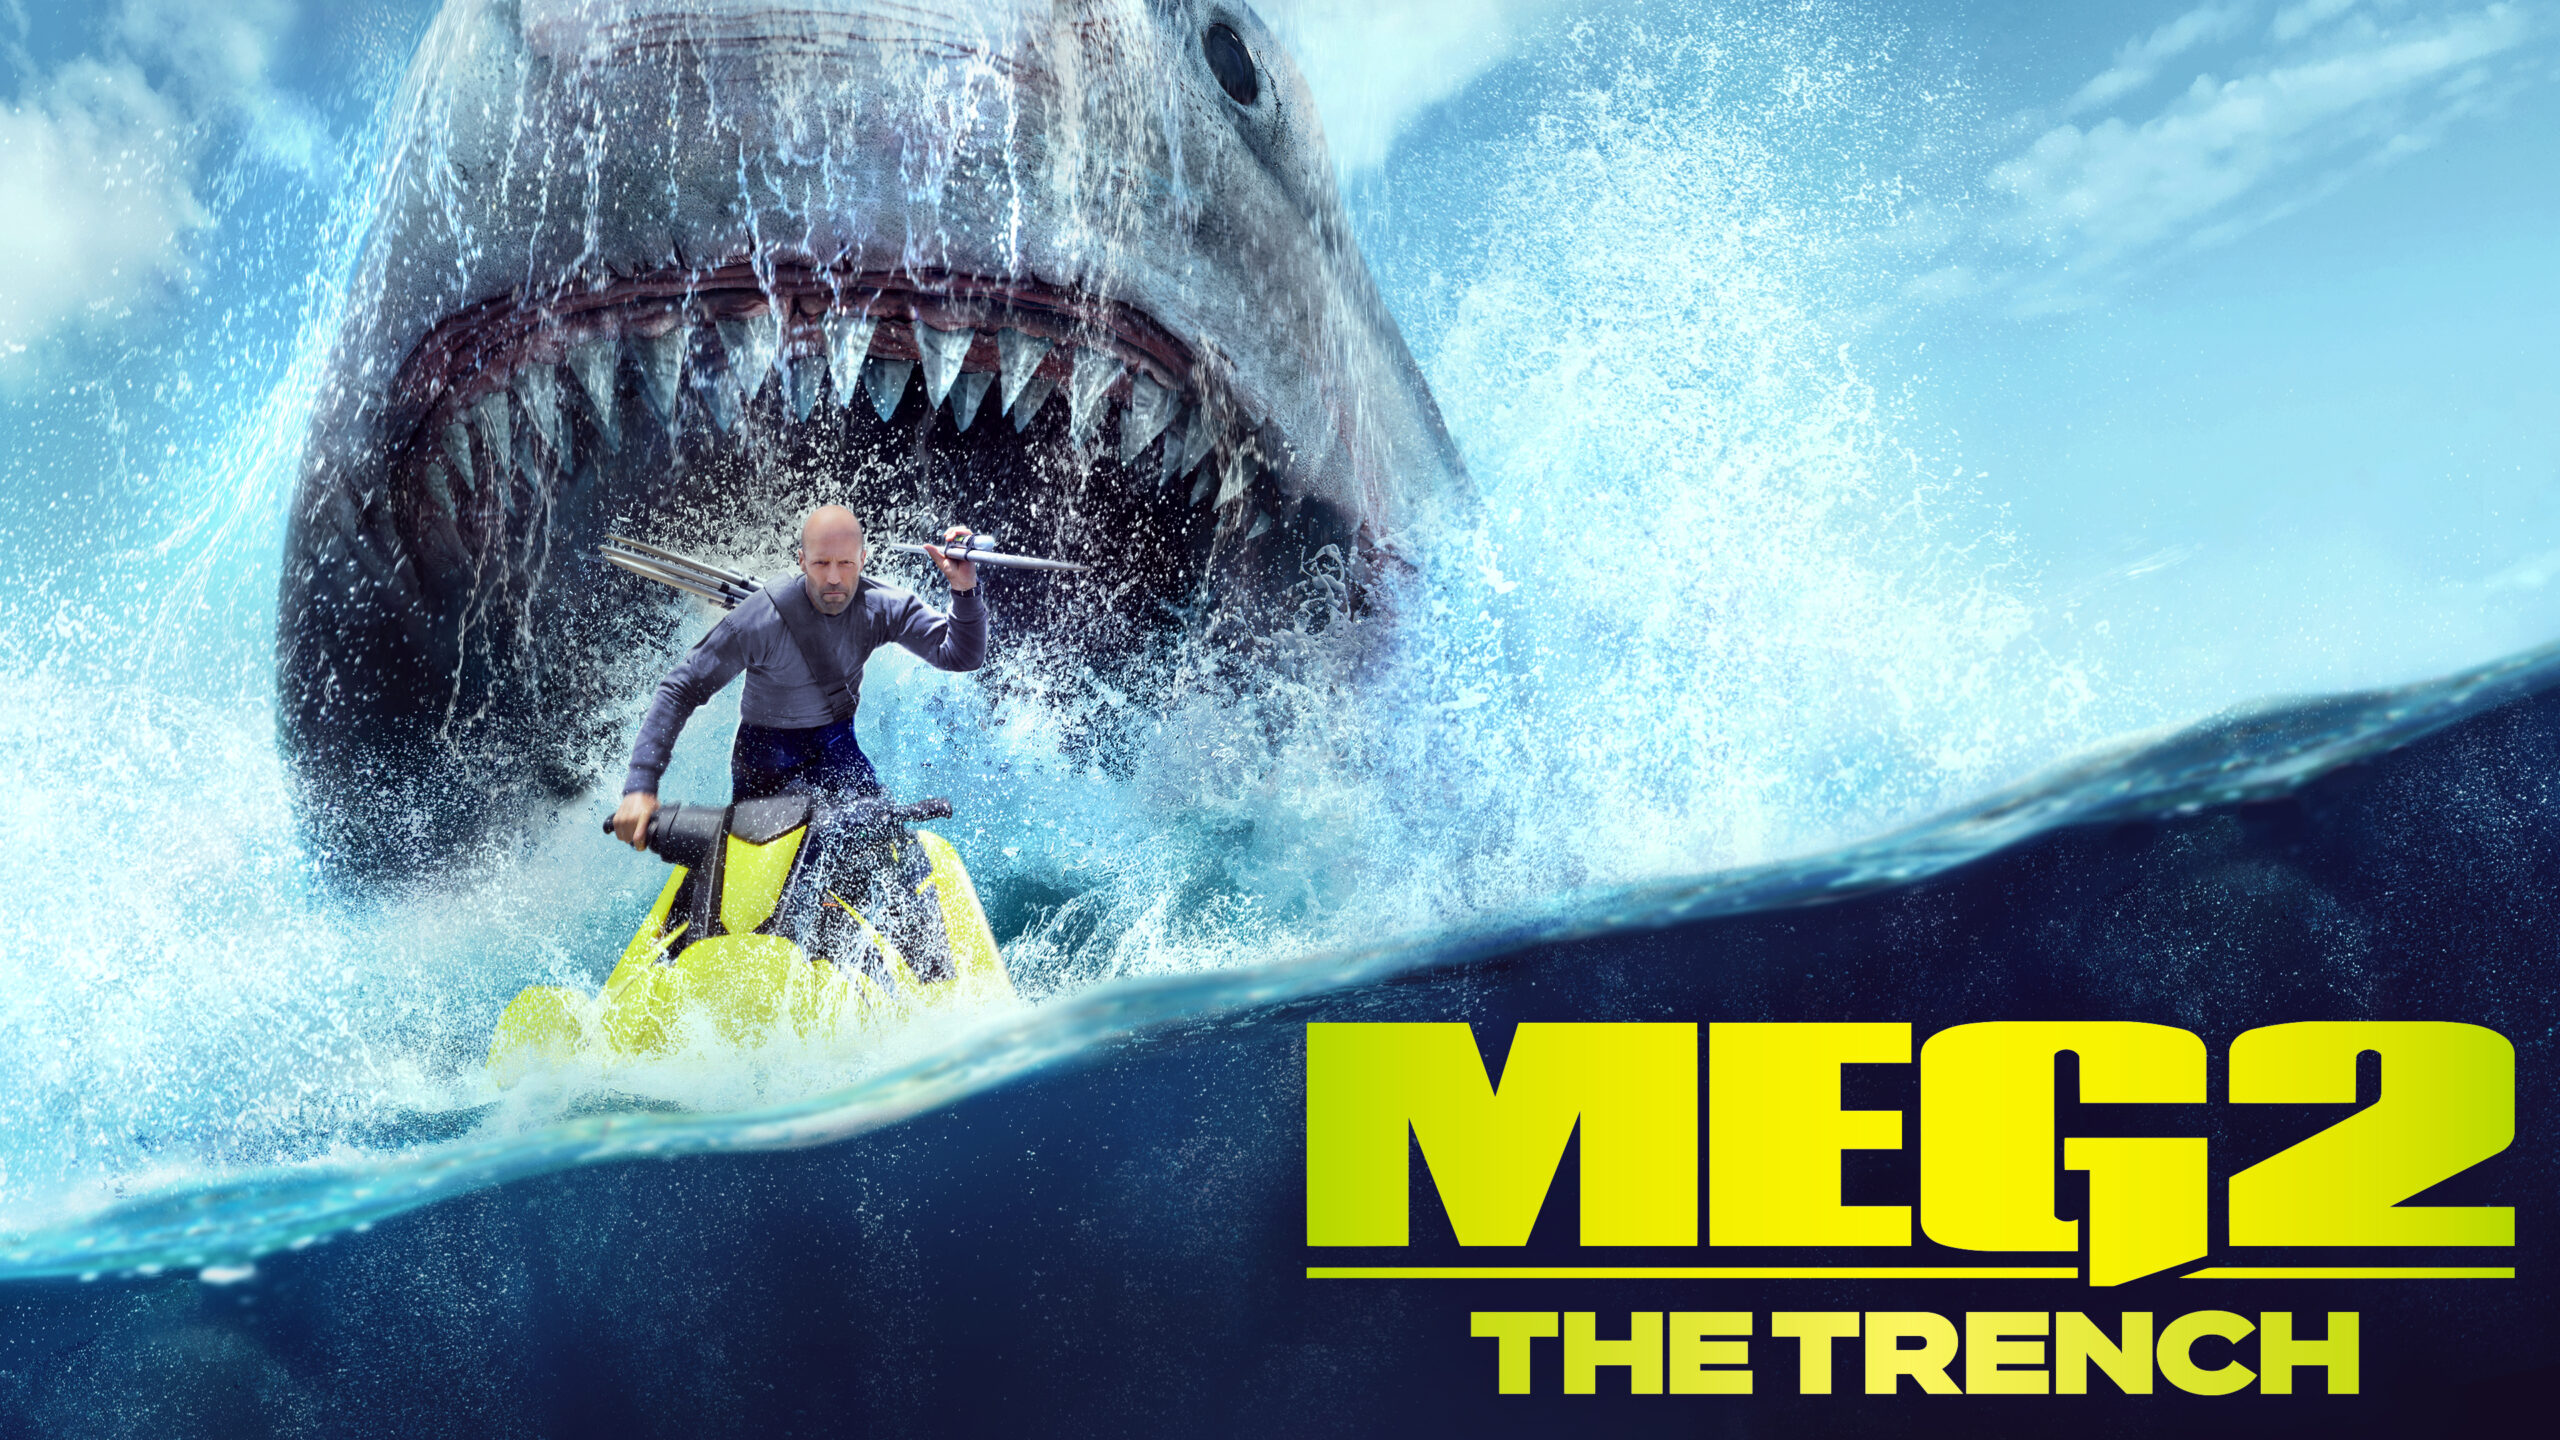 مشاهدة فلم الرعب The Meg 2 مترجم كامل HD 2023